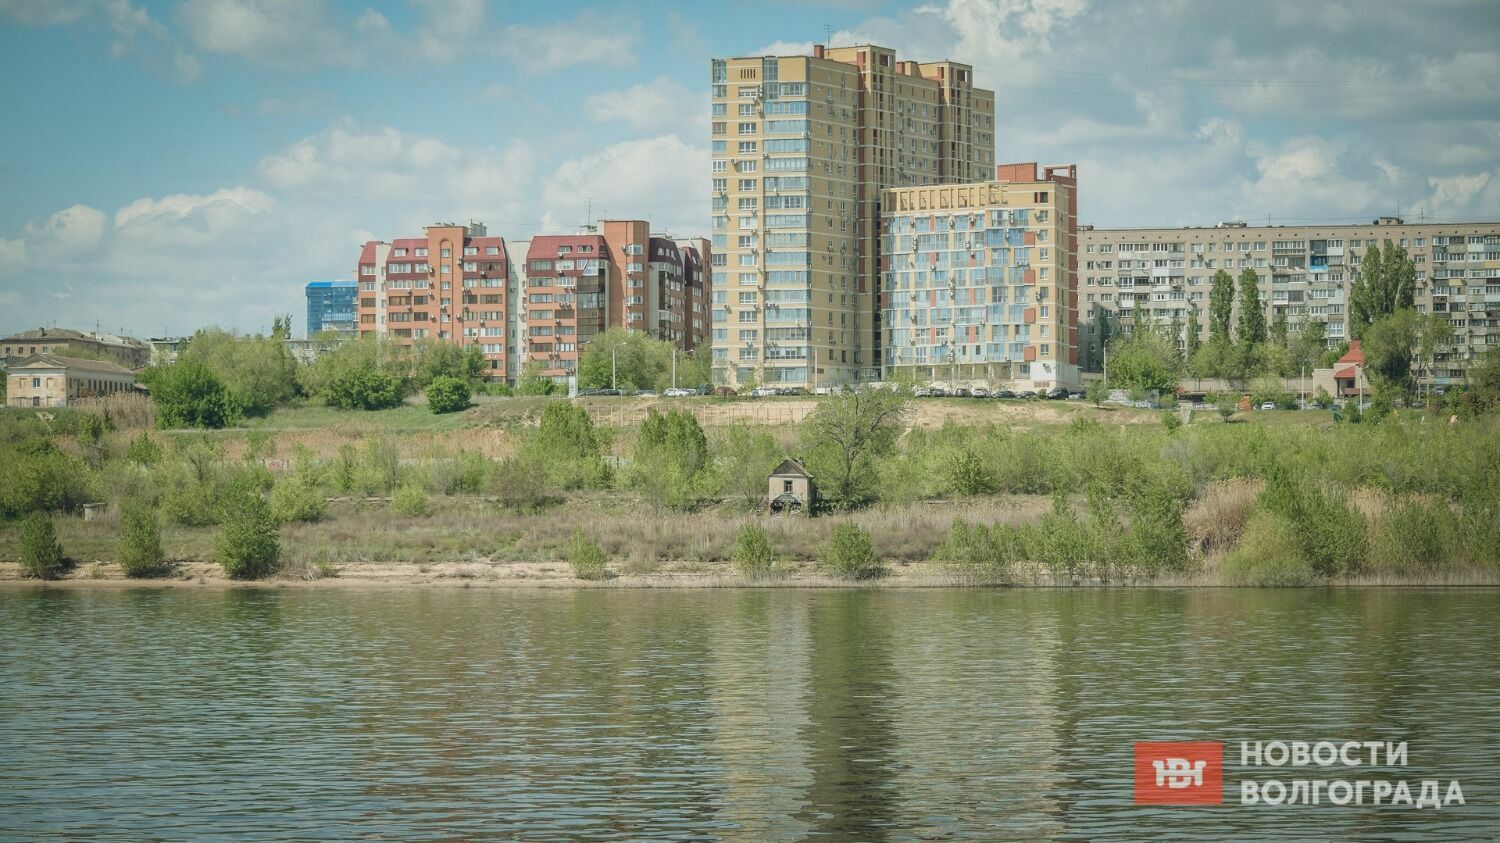 Несмотря на наличие выхода к Волге, прибрежная зона в Ворошиловском районе не благоустроена